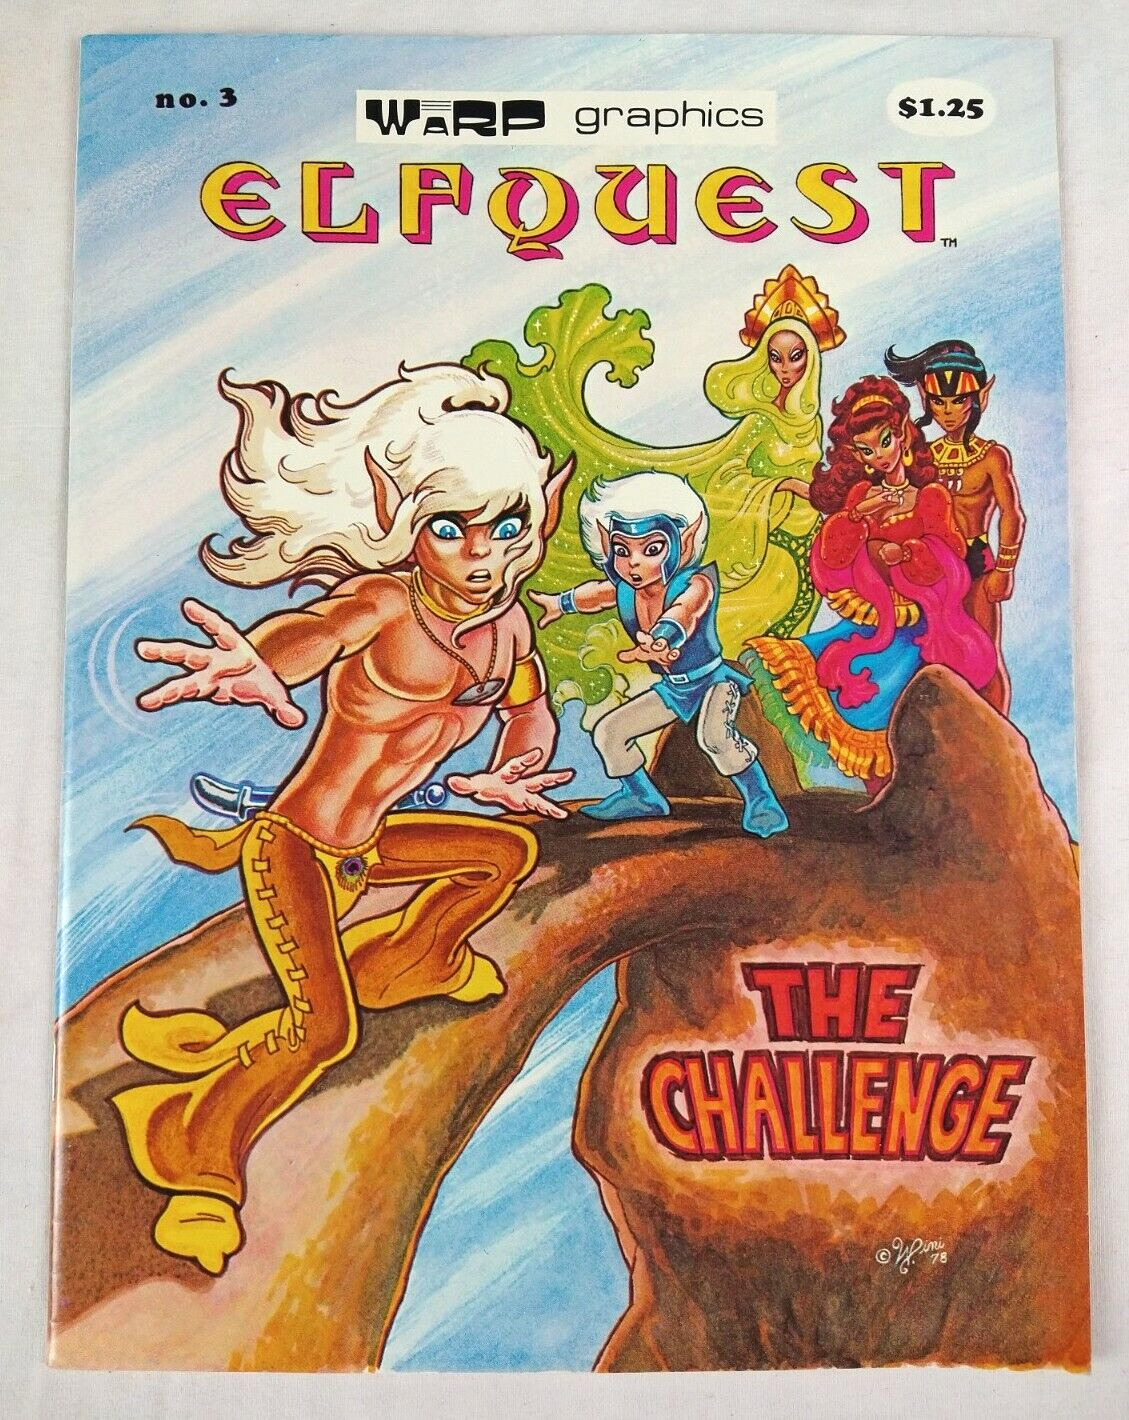 Elfquest #3 (1978 Warp Graphics) Comic Book, Higher Grade